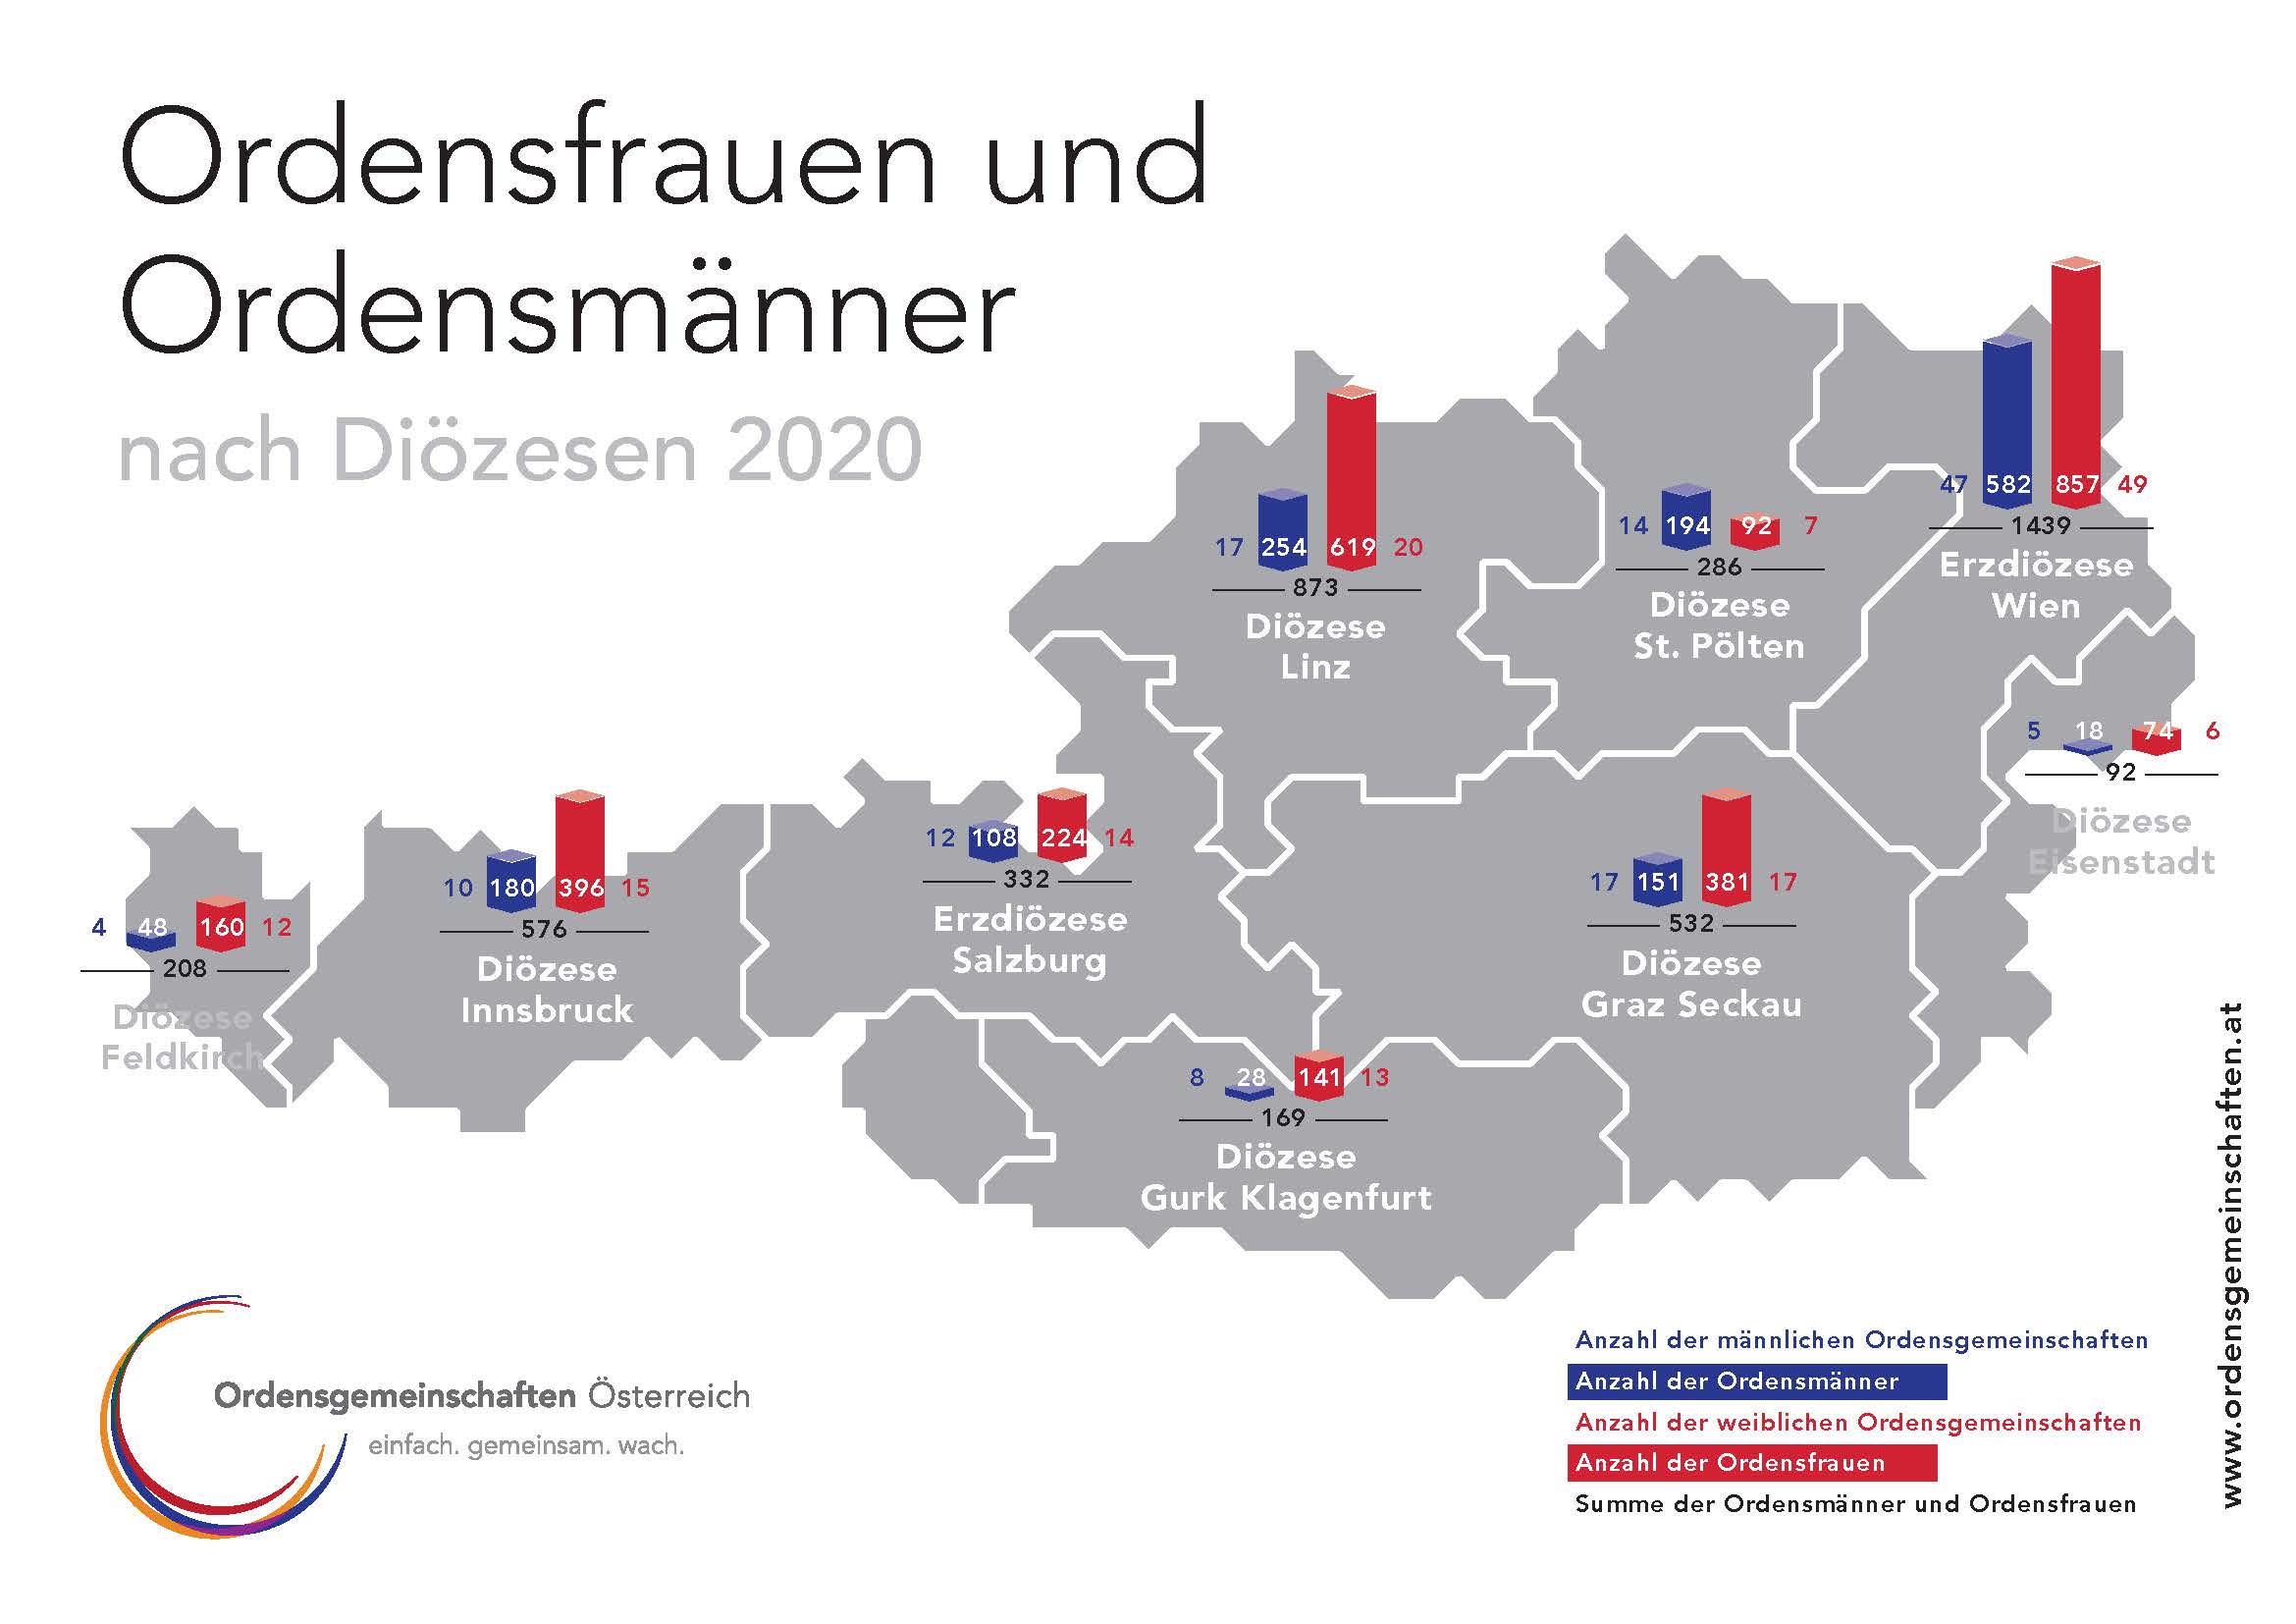 Ordensstatistik 2020 für Österreich